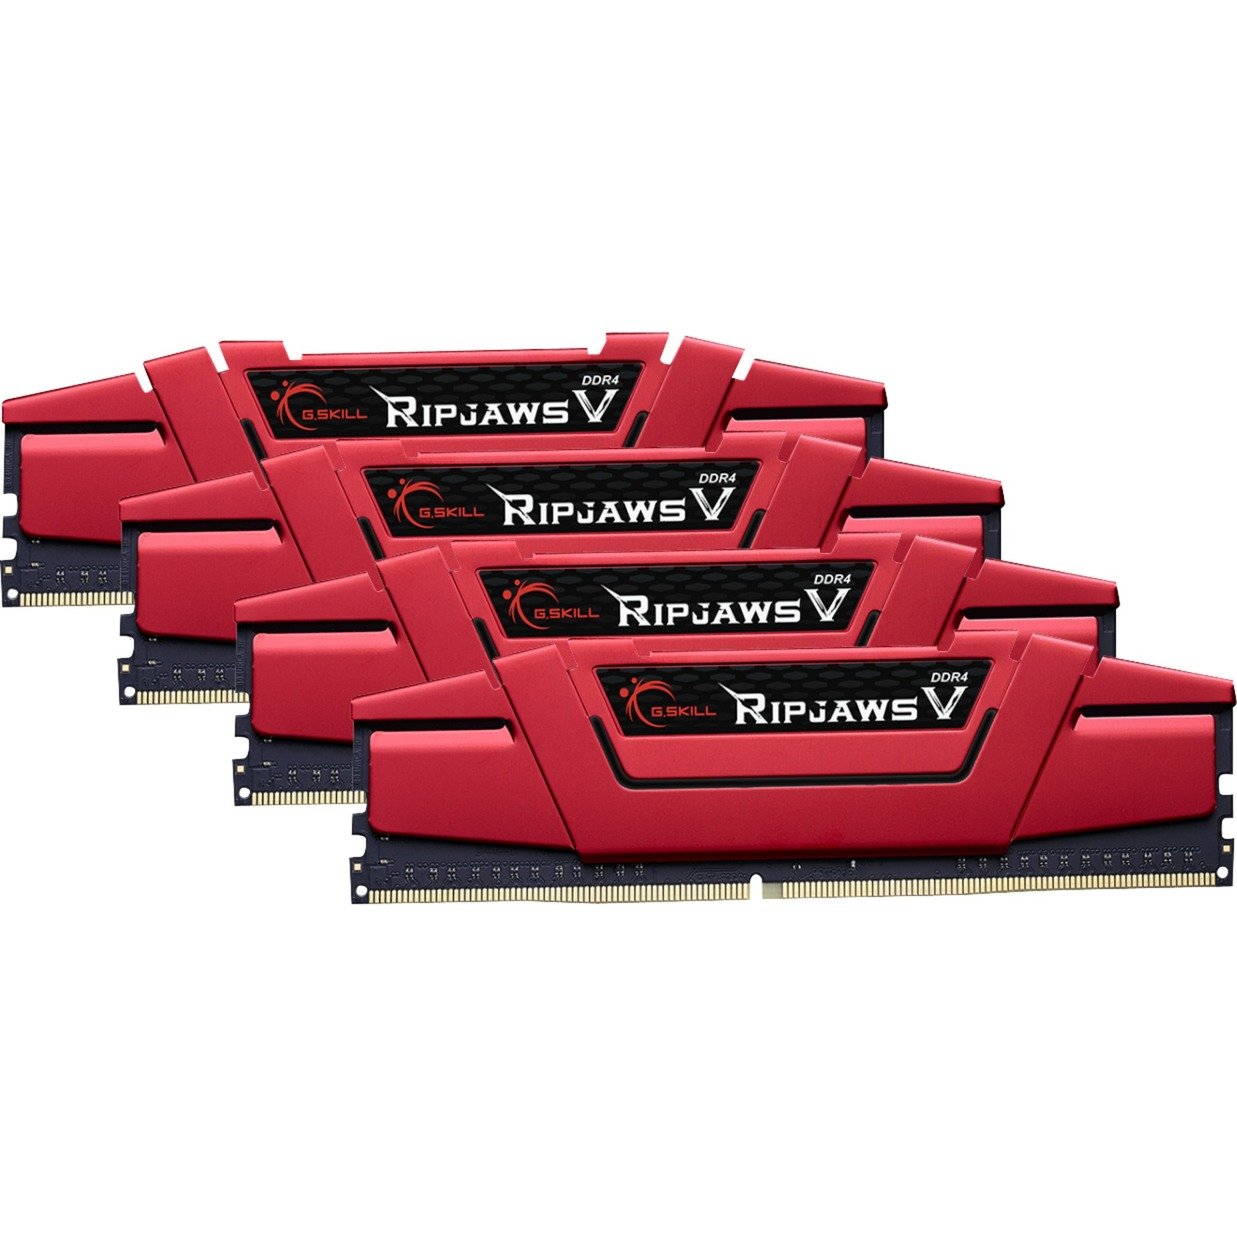 Ripjaws V 64GB DDR4-3000Mhz moduł pamięci, Pamięc operacyjna